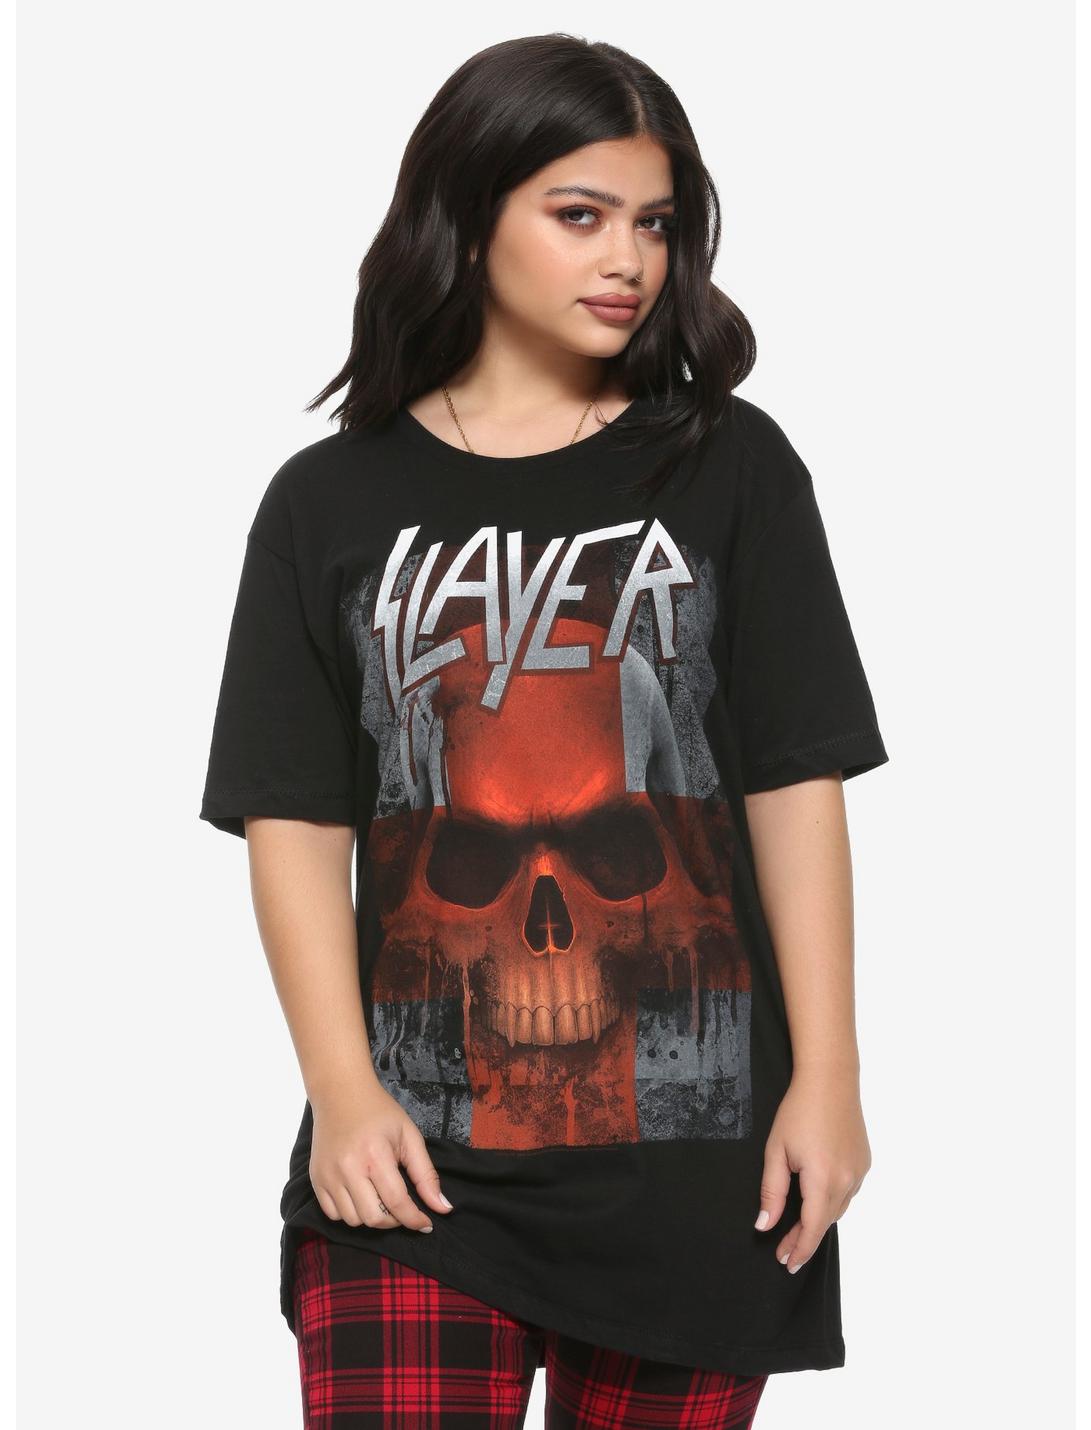 Slayer Skull Upside-Down Cross Girls T-Shirt, BLACK, hi-res